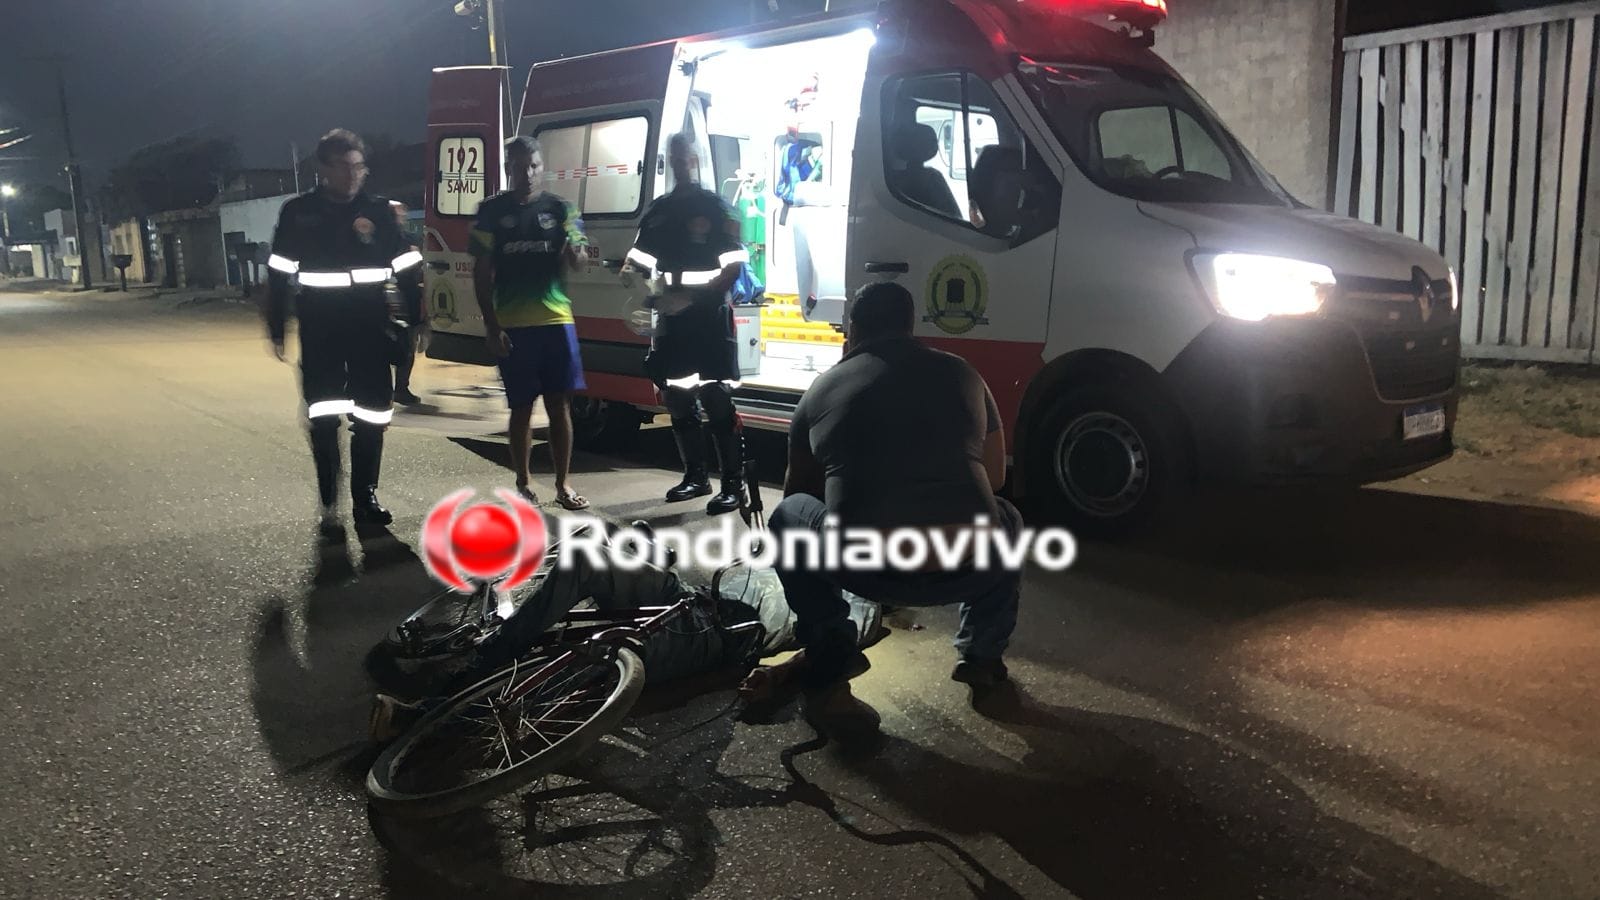 OMISSÃO DE SOCORRO: Motociclista foge após atropelar e deixar ciclista gravemente ferido 